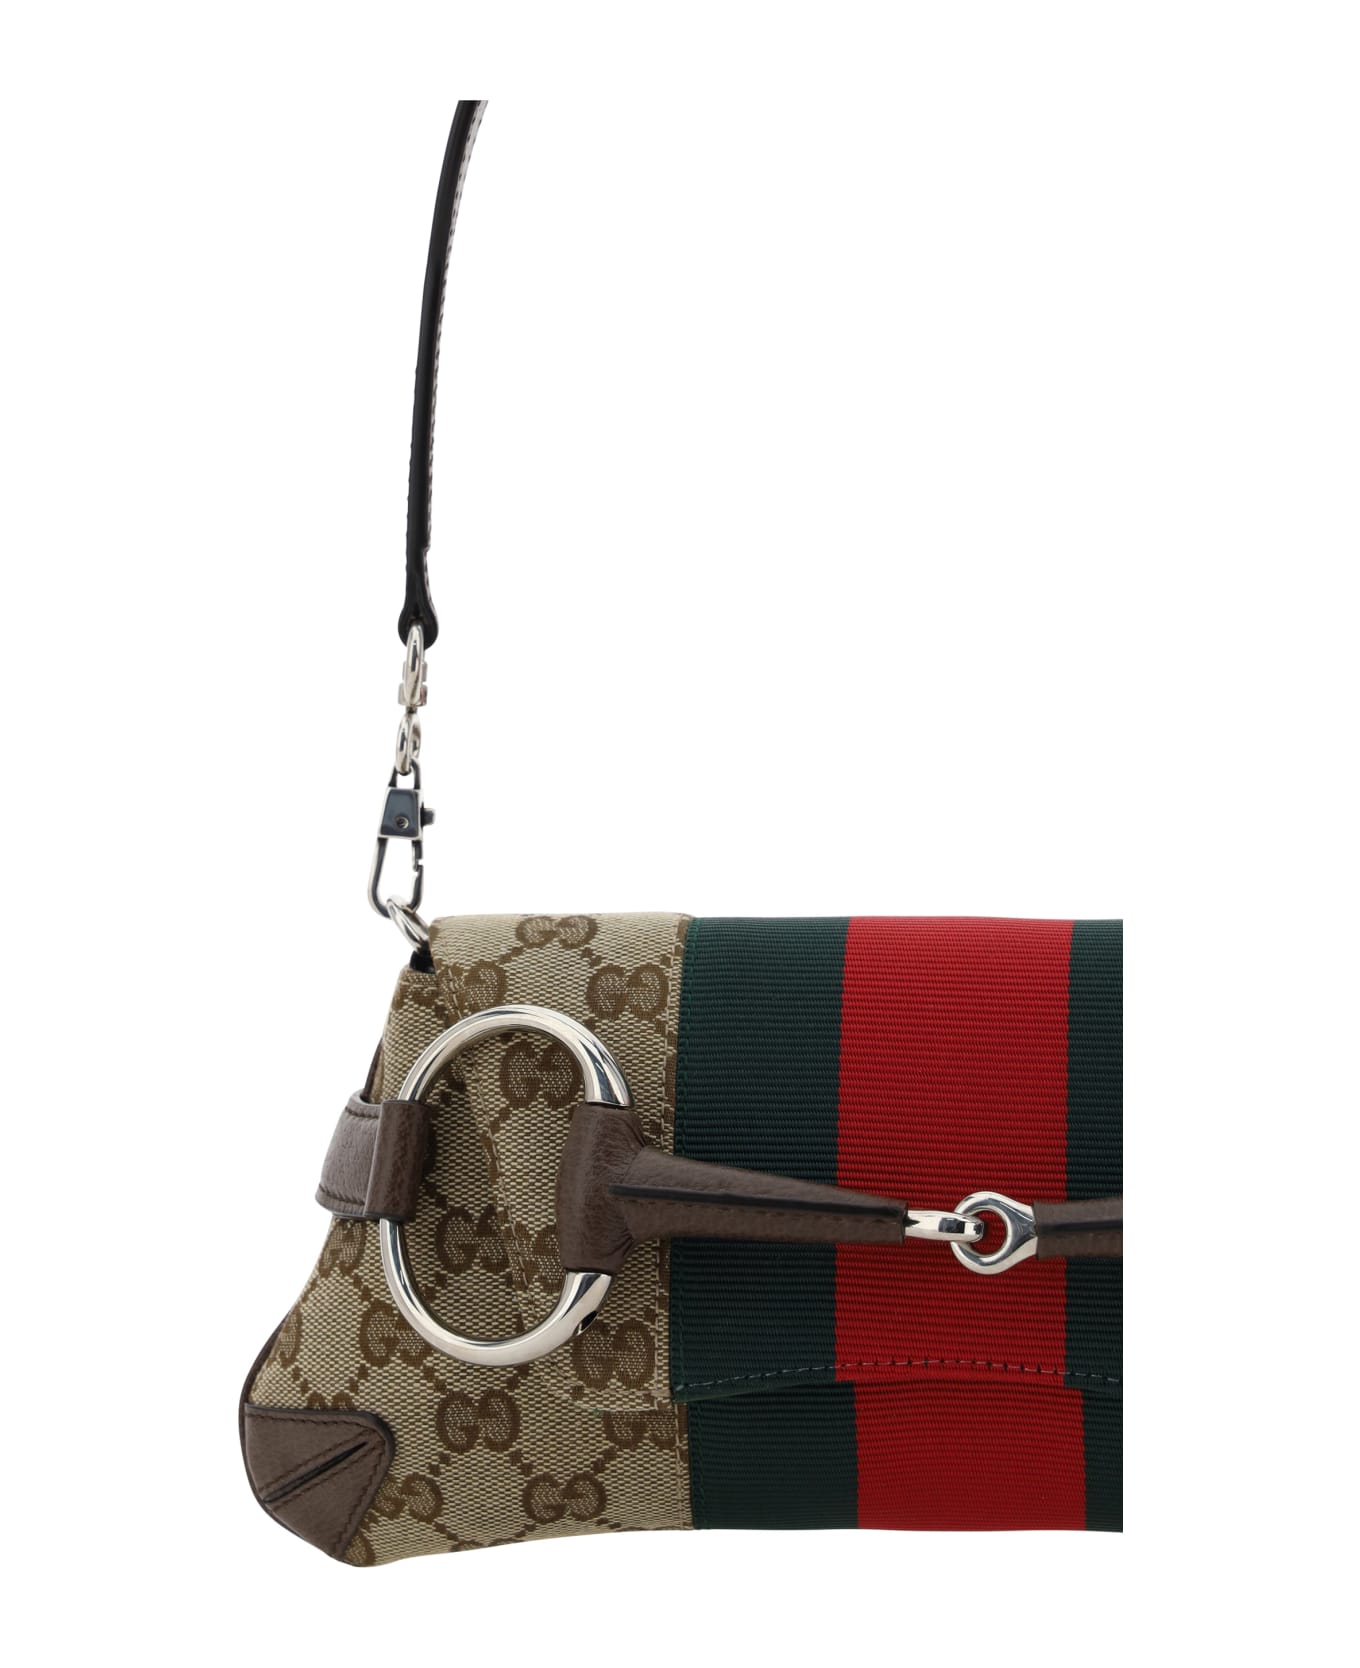 Gucci Horsebit Mini Shoulder Bag - Acero